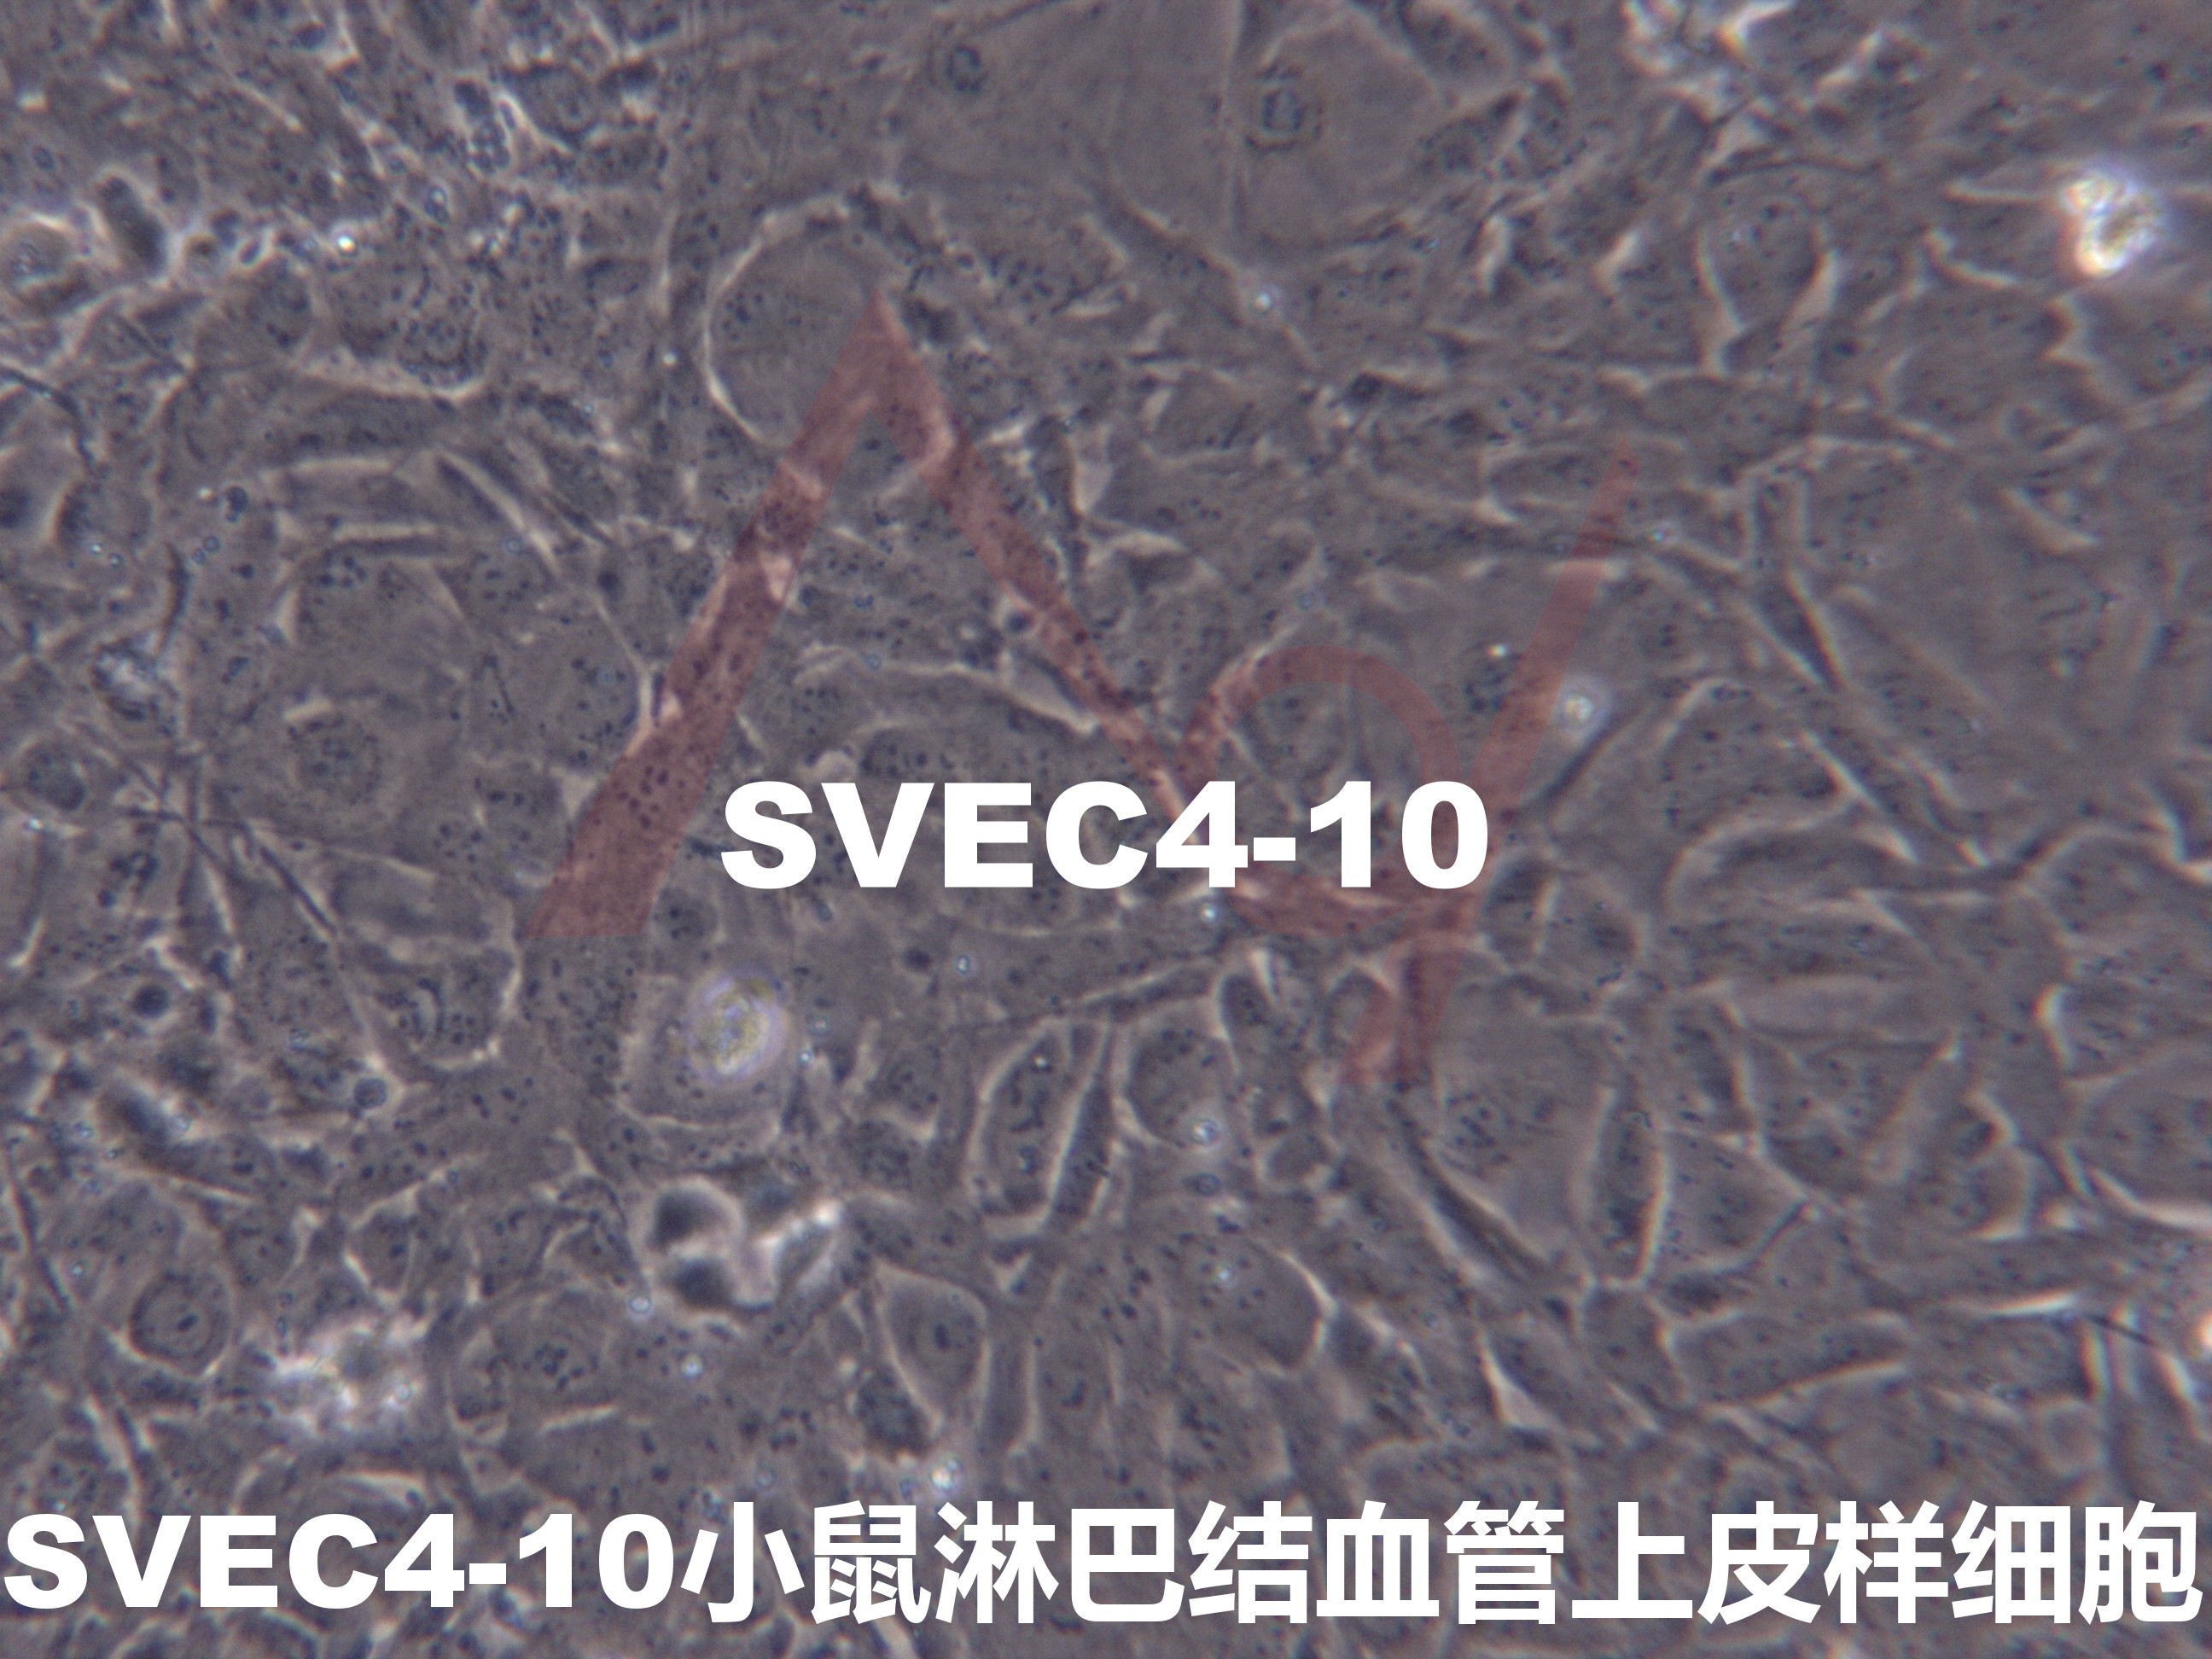 SVEC4-10【SVEC 4-10】小鼠淋巴结血管上皮样细胞